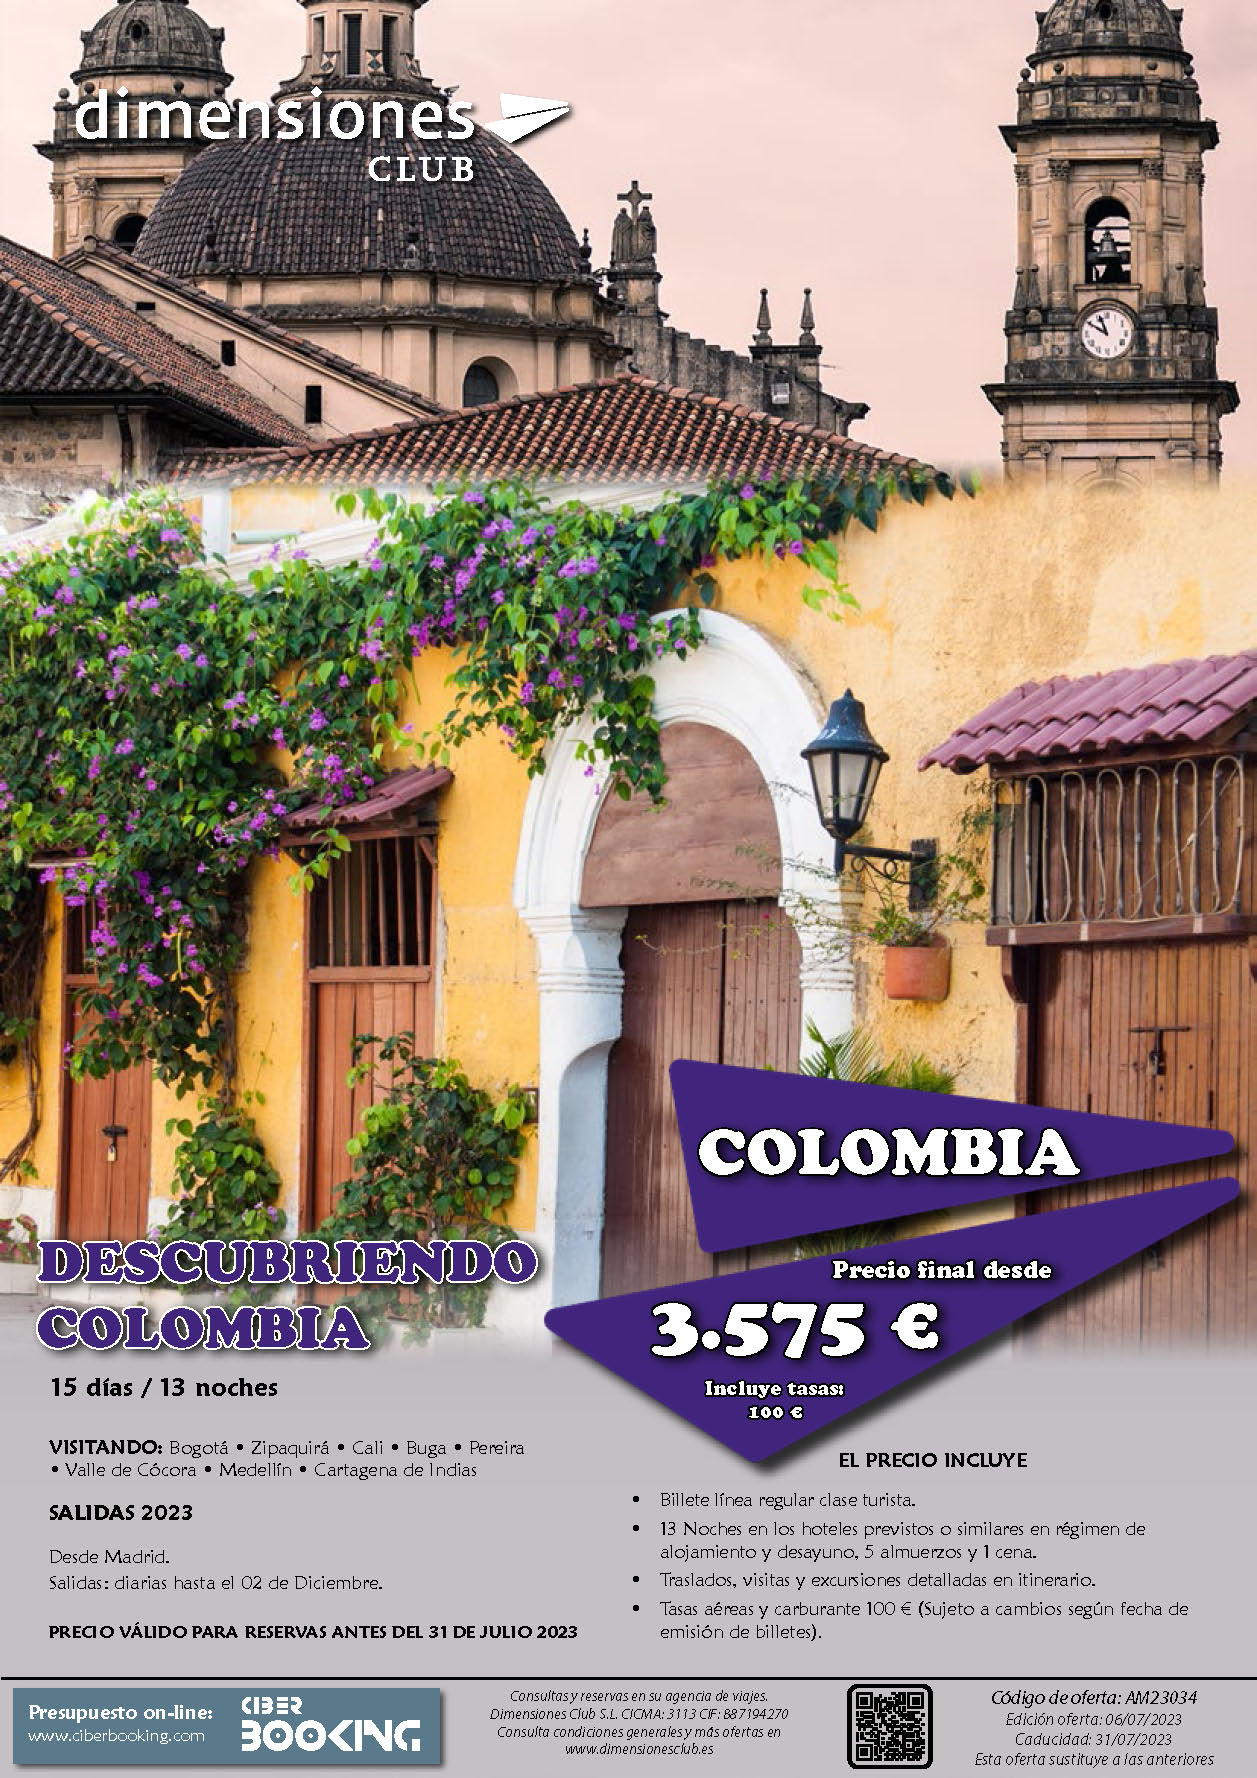 Oferta Dimensiones Club circuito Descubriendo Colombia 15 dias junio a diciembre 2023 salidas en vuelo directo desde Madrid